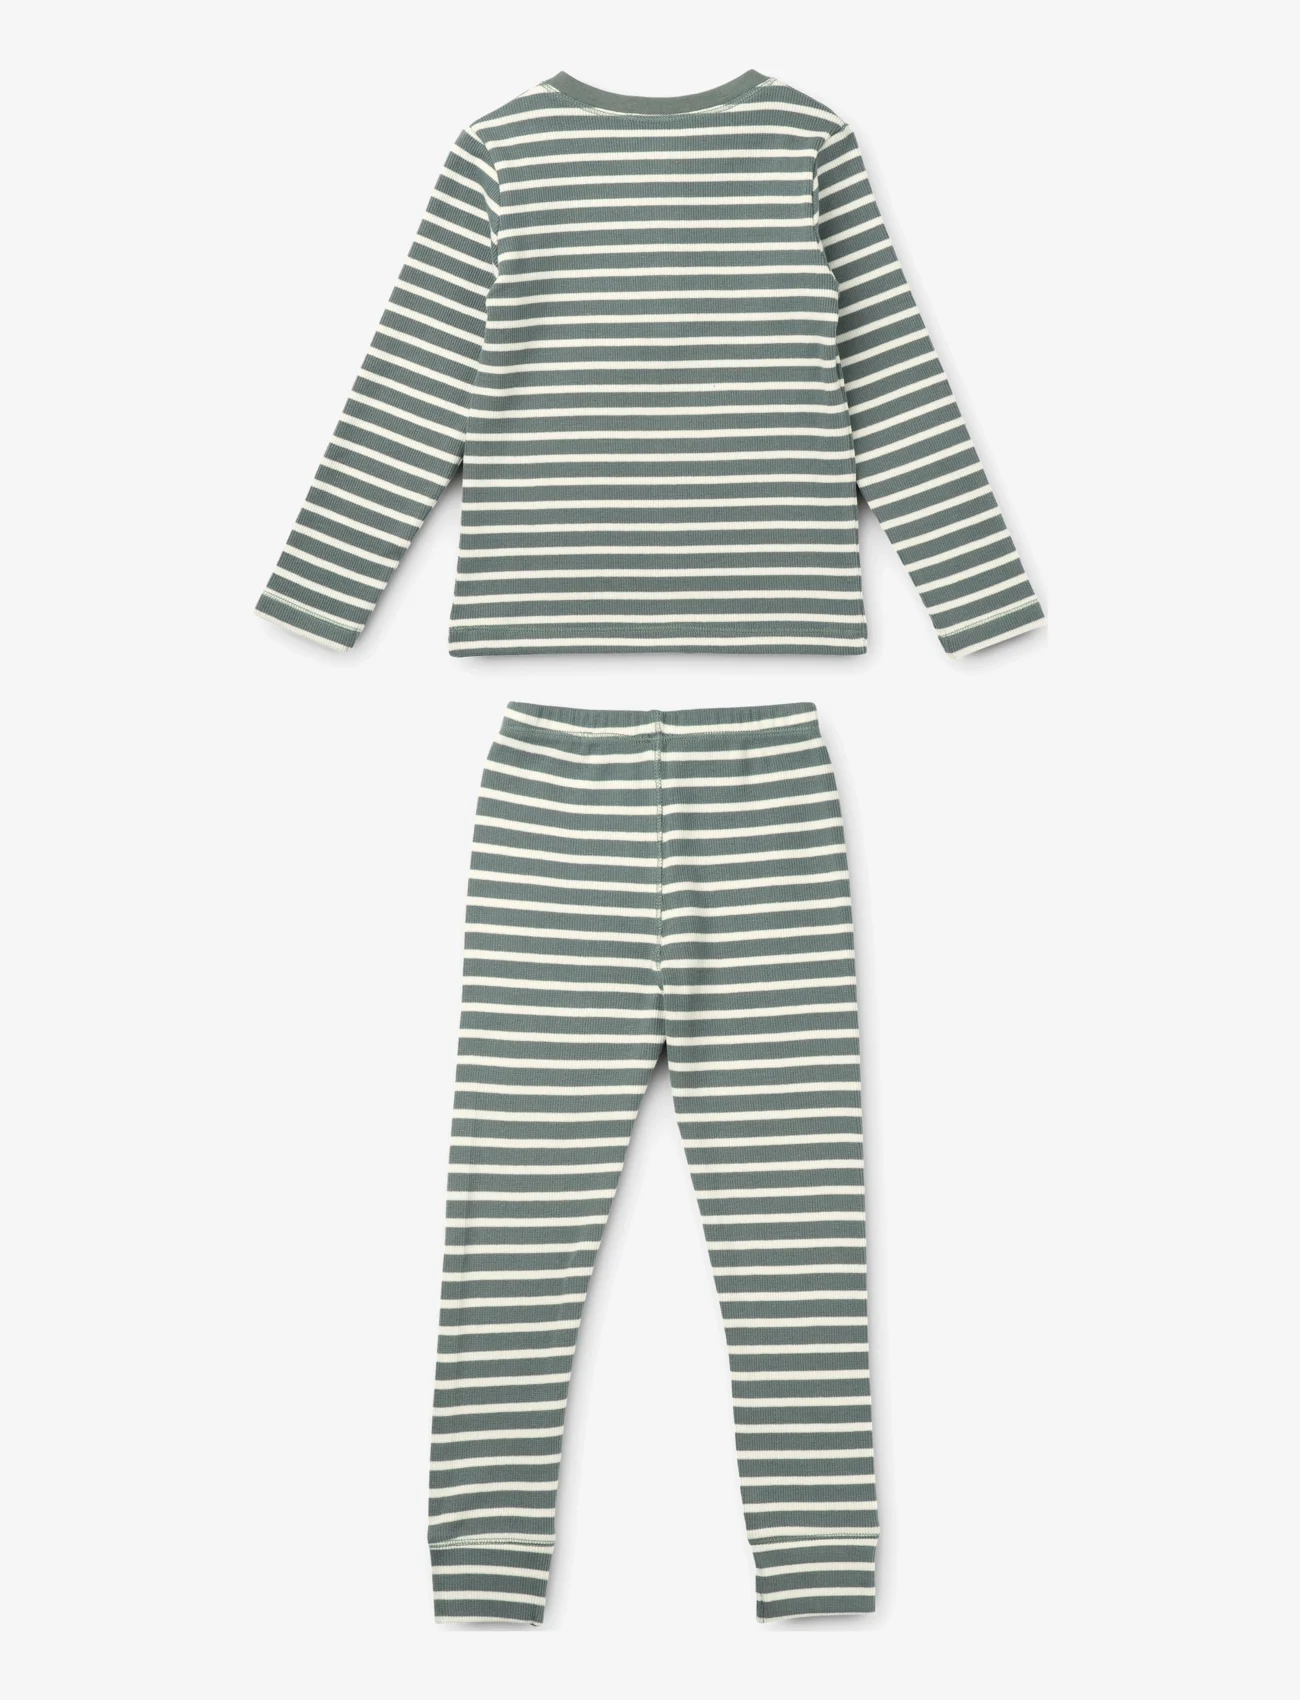 Liewood - Wilhelm pyjamas set - pyjamassæt - y/d stripe - 1